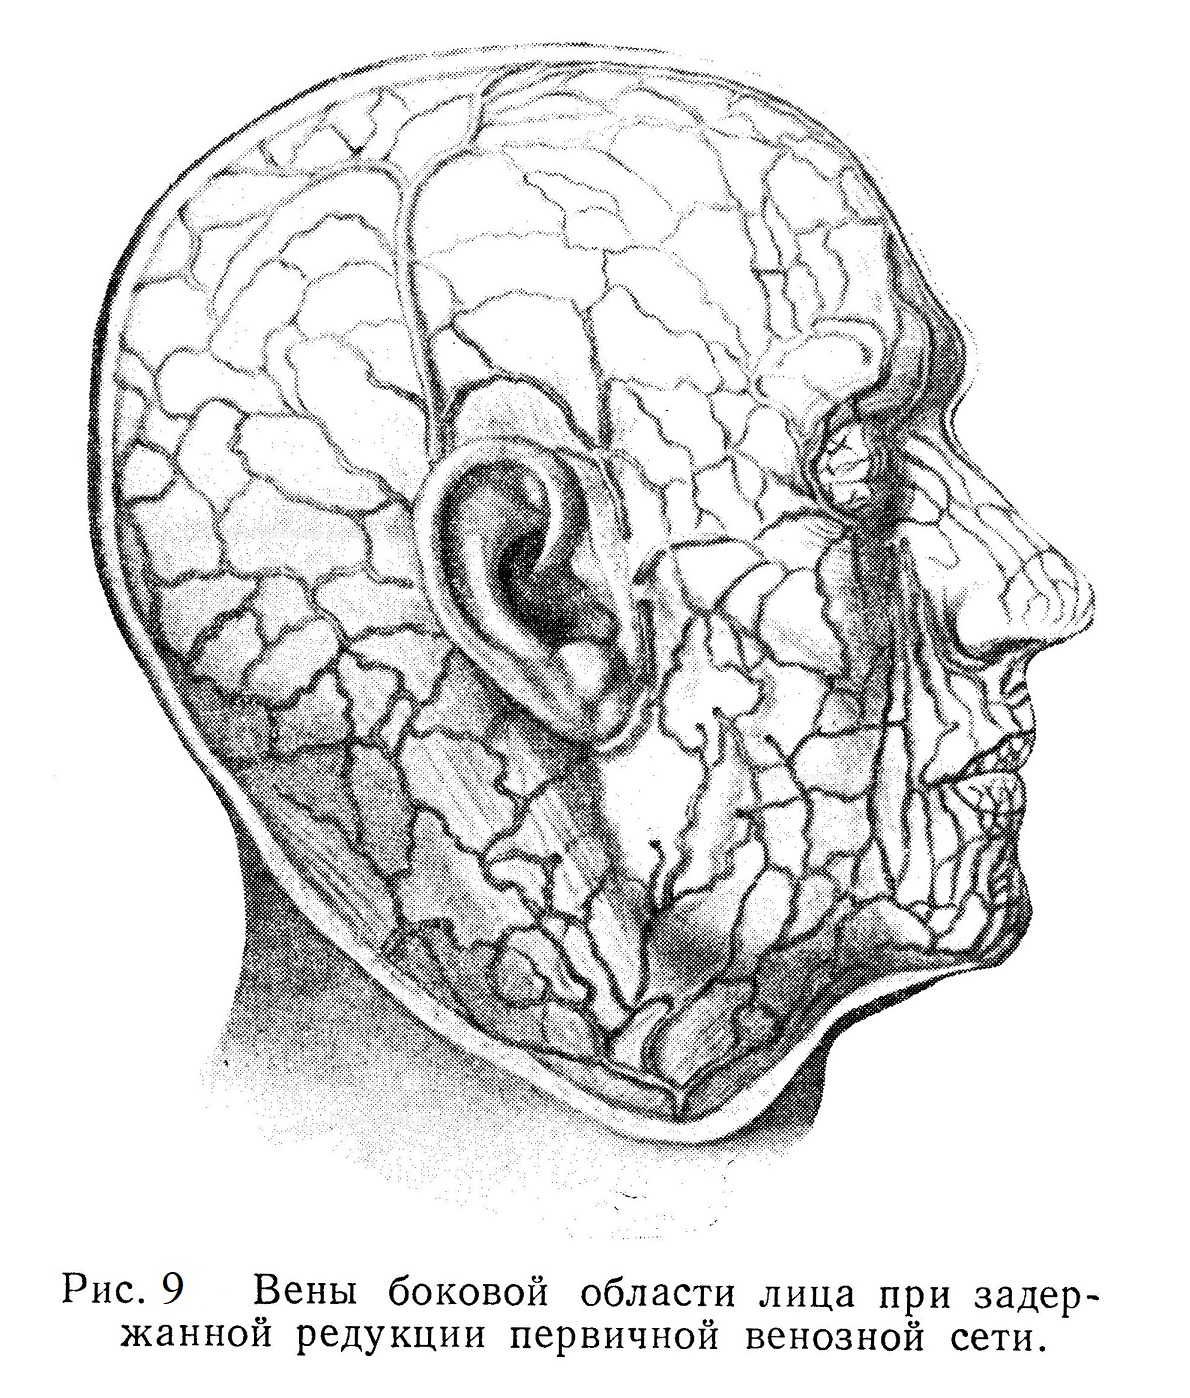 Вены боковой области лица при задержанной редукции первичной венозной сети.